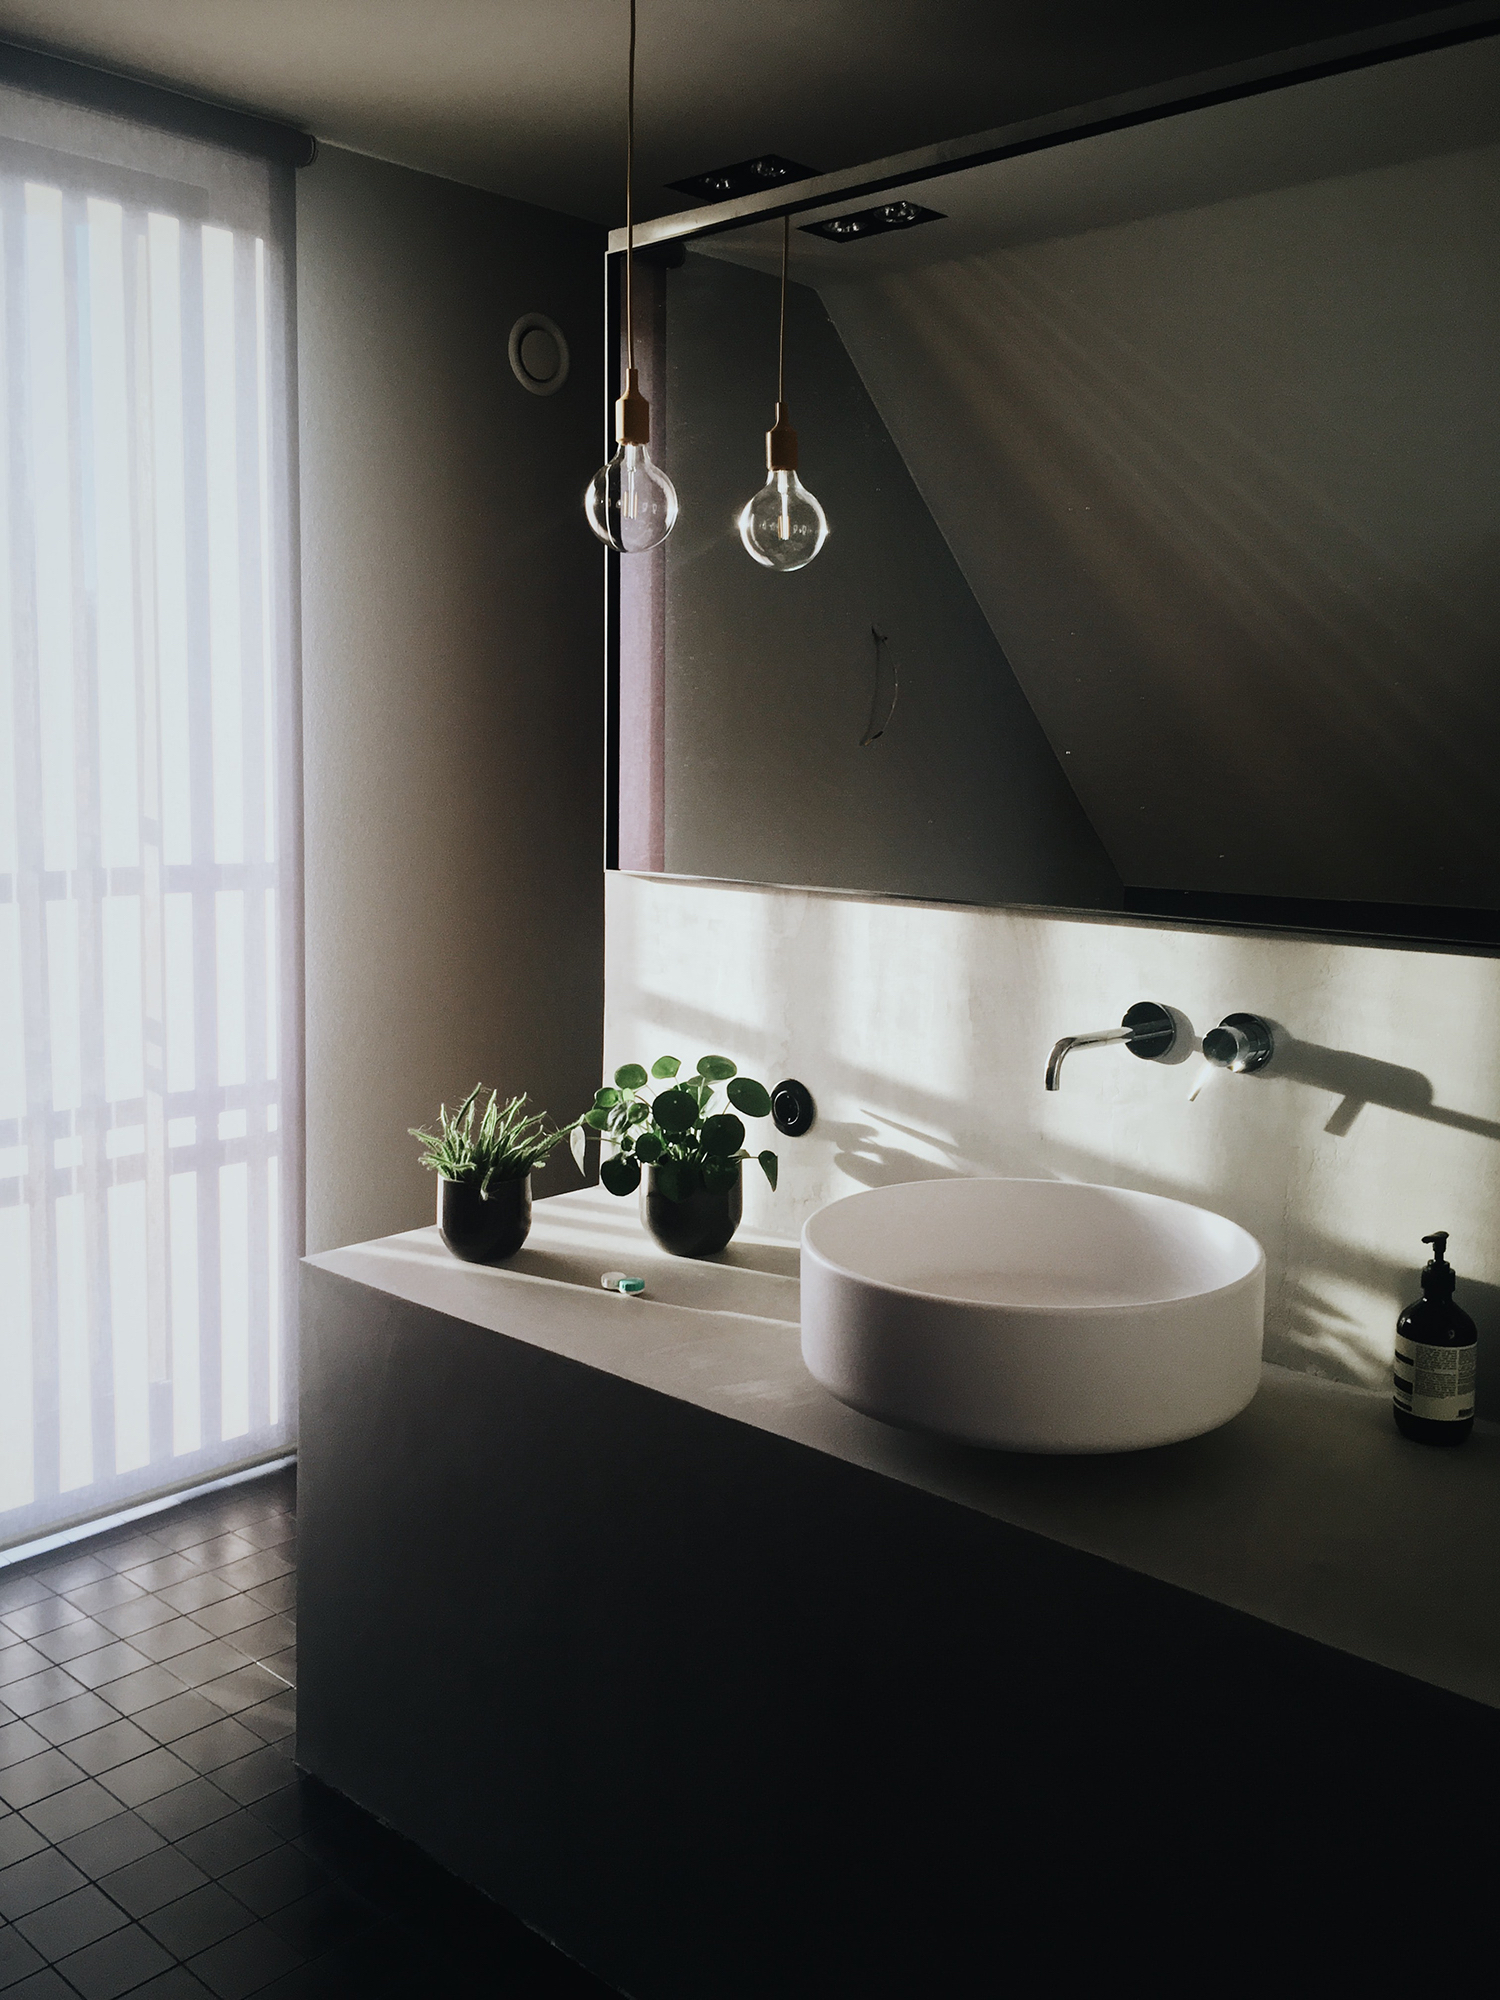 6 самых нужных советов для удобного и красивого освещения ванной комнаты